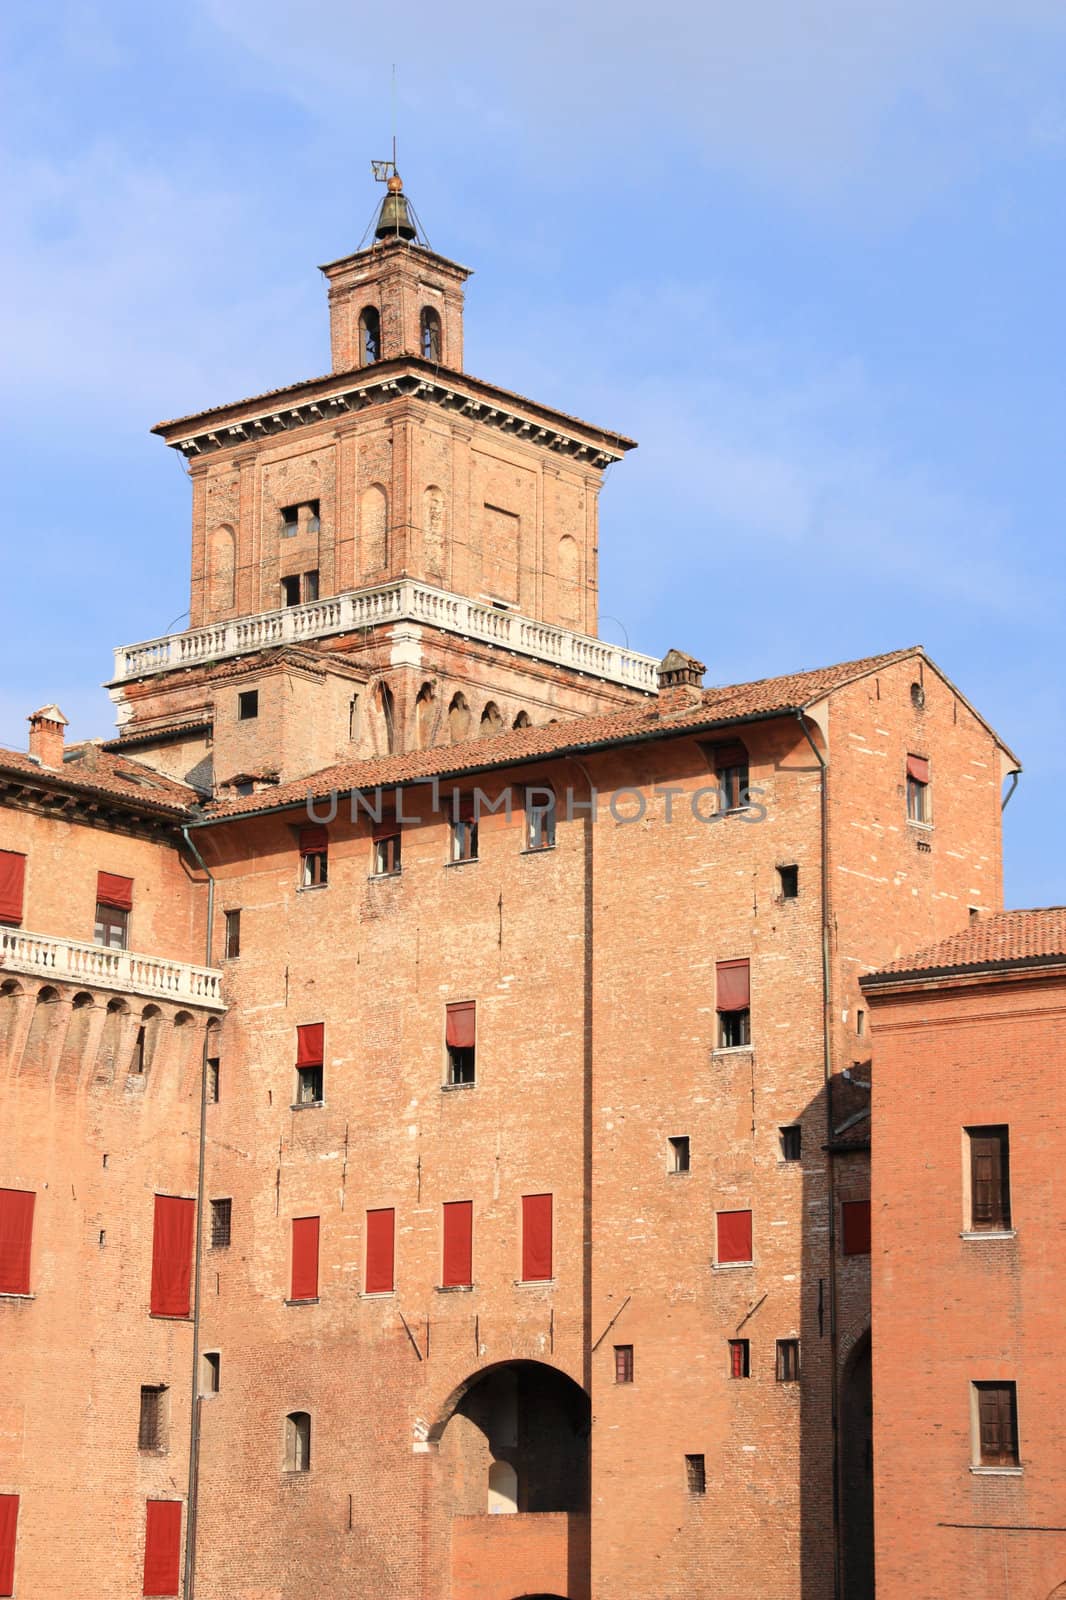 Ferrara castle by tupungato